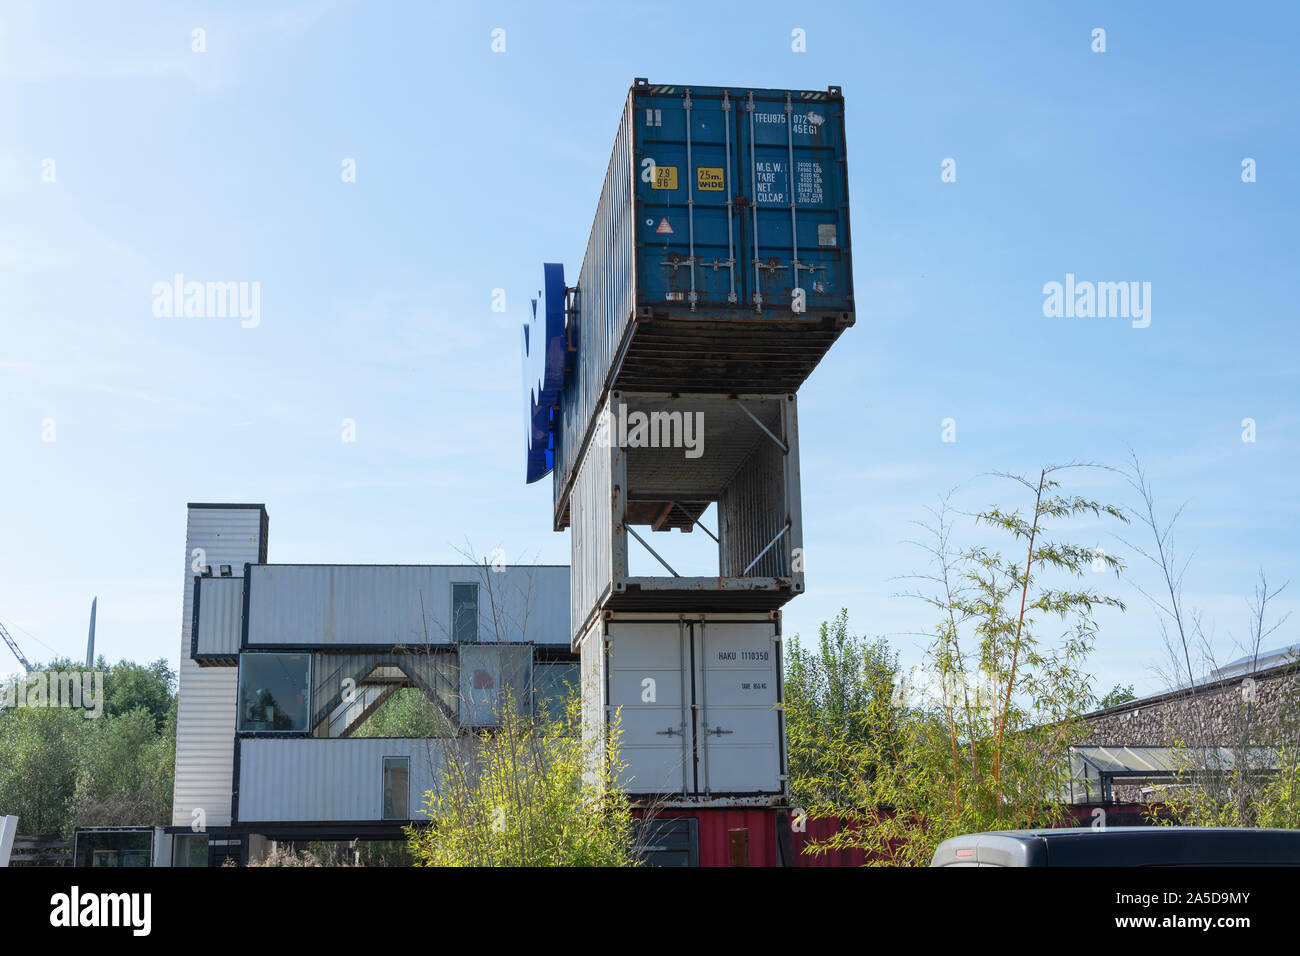 Stekene, Belgien, 14. September 2019, Ferse oude scheeps-Container op elkaar gezet, Click zie je de ingang van het Wereld erfgoed Verbeke Foundation van Stockfoto